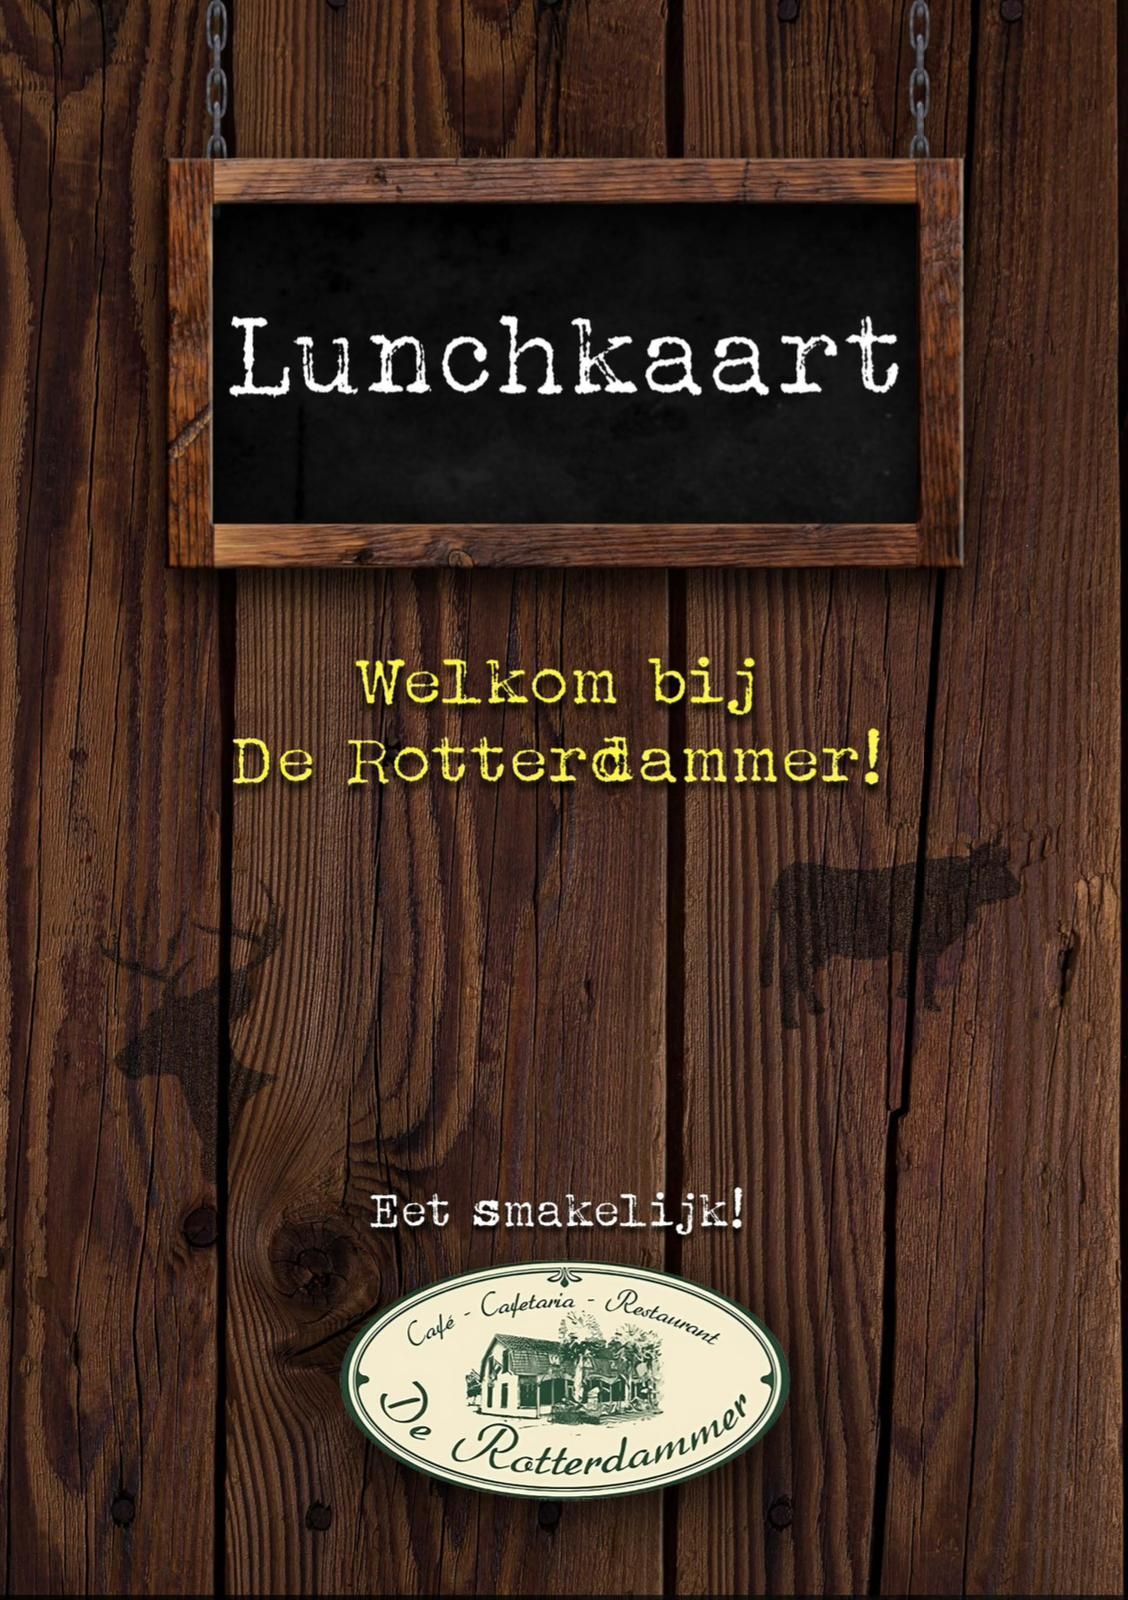 Lunchkaart van de Rotterdammer te Stoe.